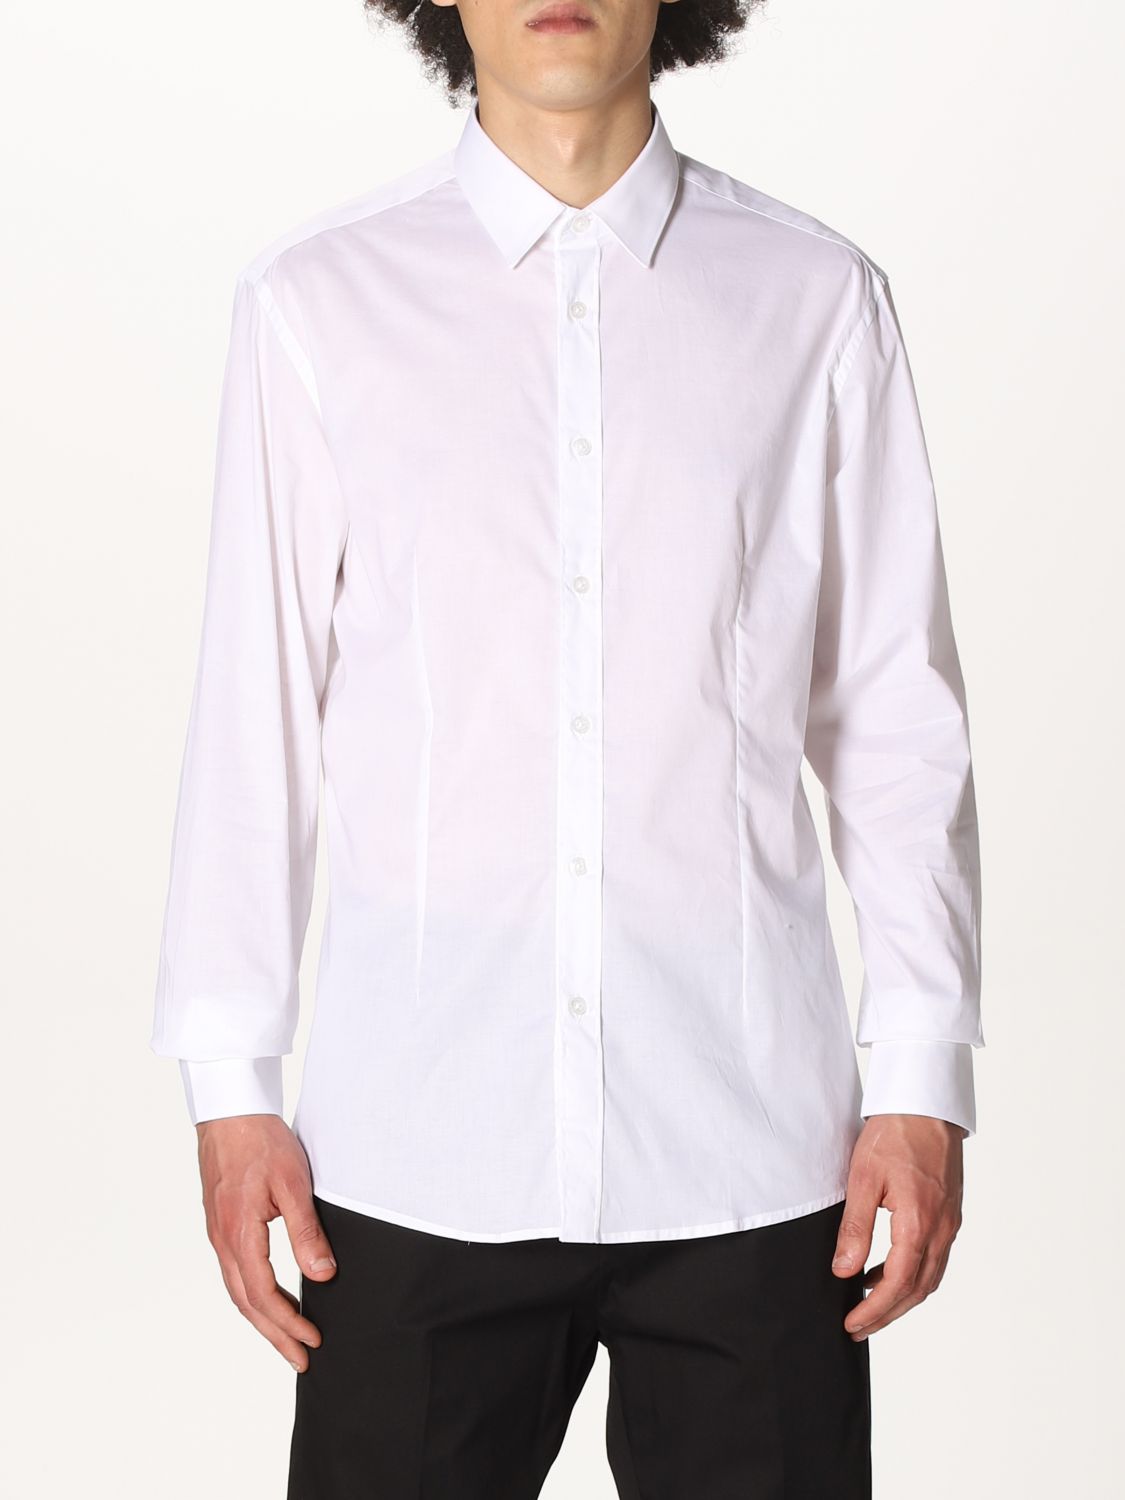 Shirt Daniele Alessandrini: Daniele Alessandrini shirt for men white 1